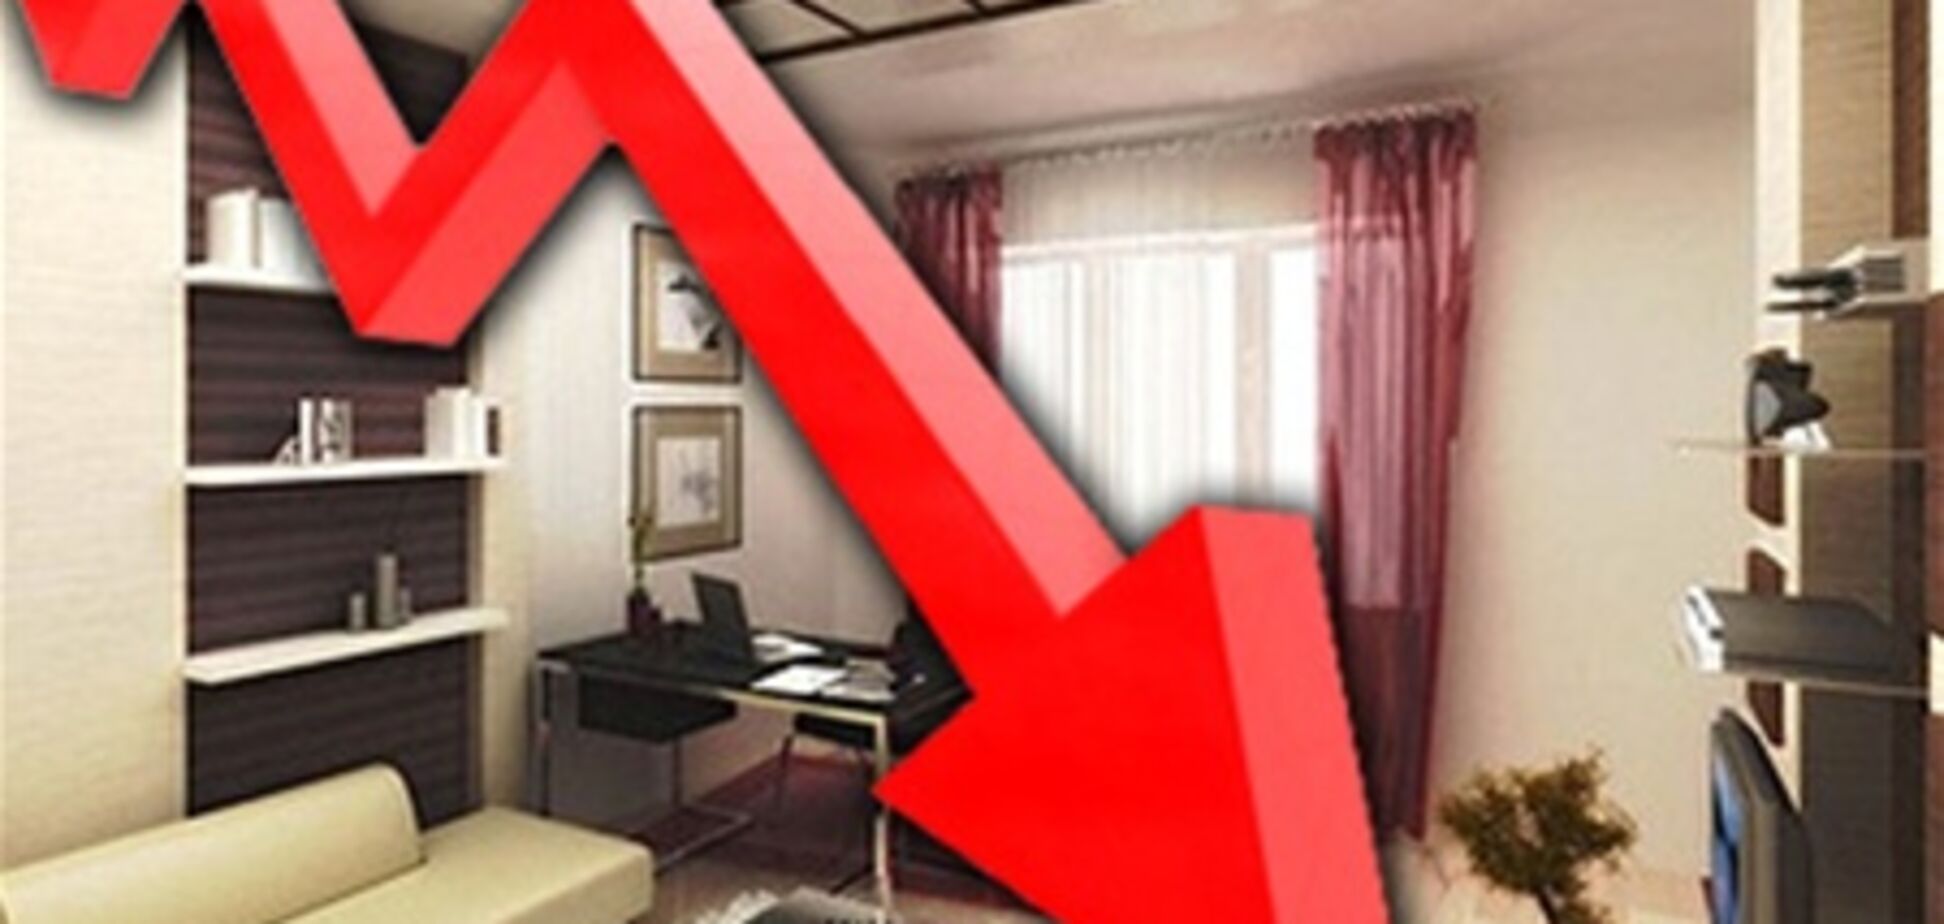 Рынок недвижимости ждет неизбежное падение цен на квартиры